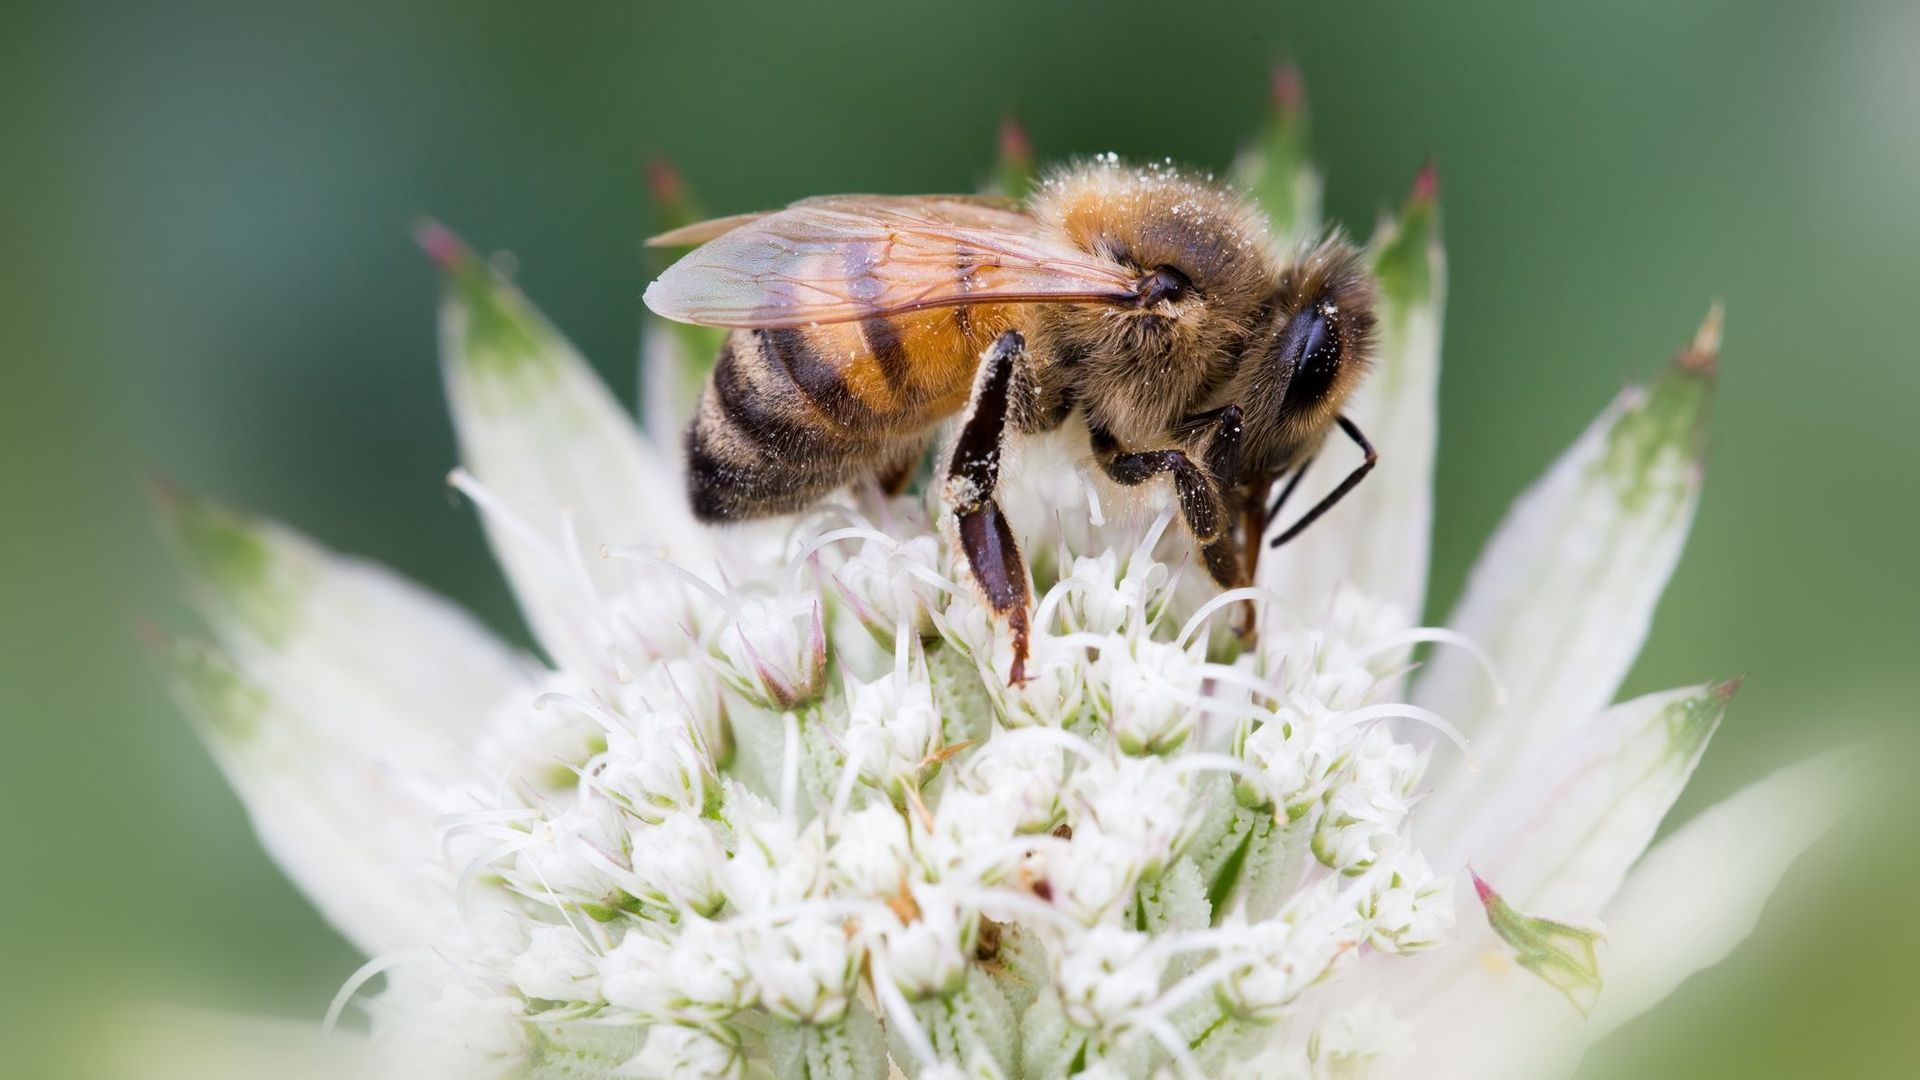 Et si on pratiquait l'apiculture darwinienne pour protéger les abeilles ?